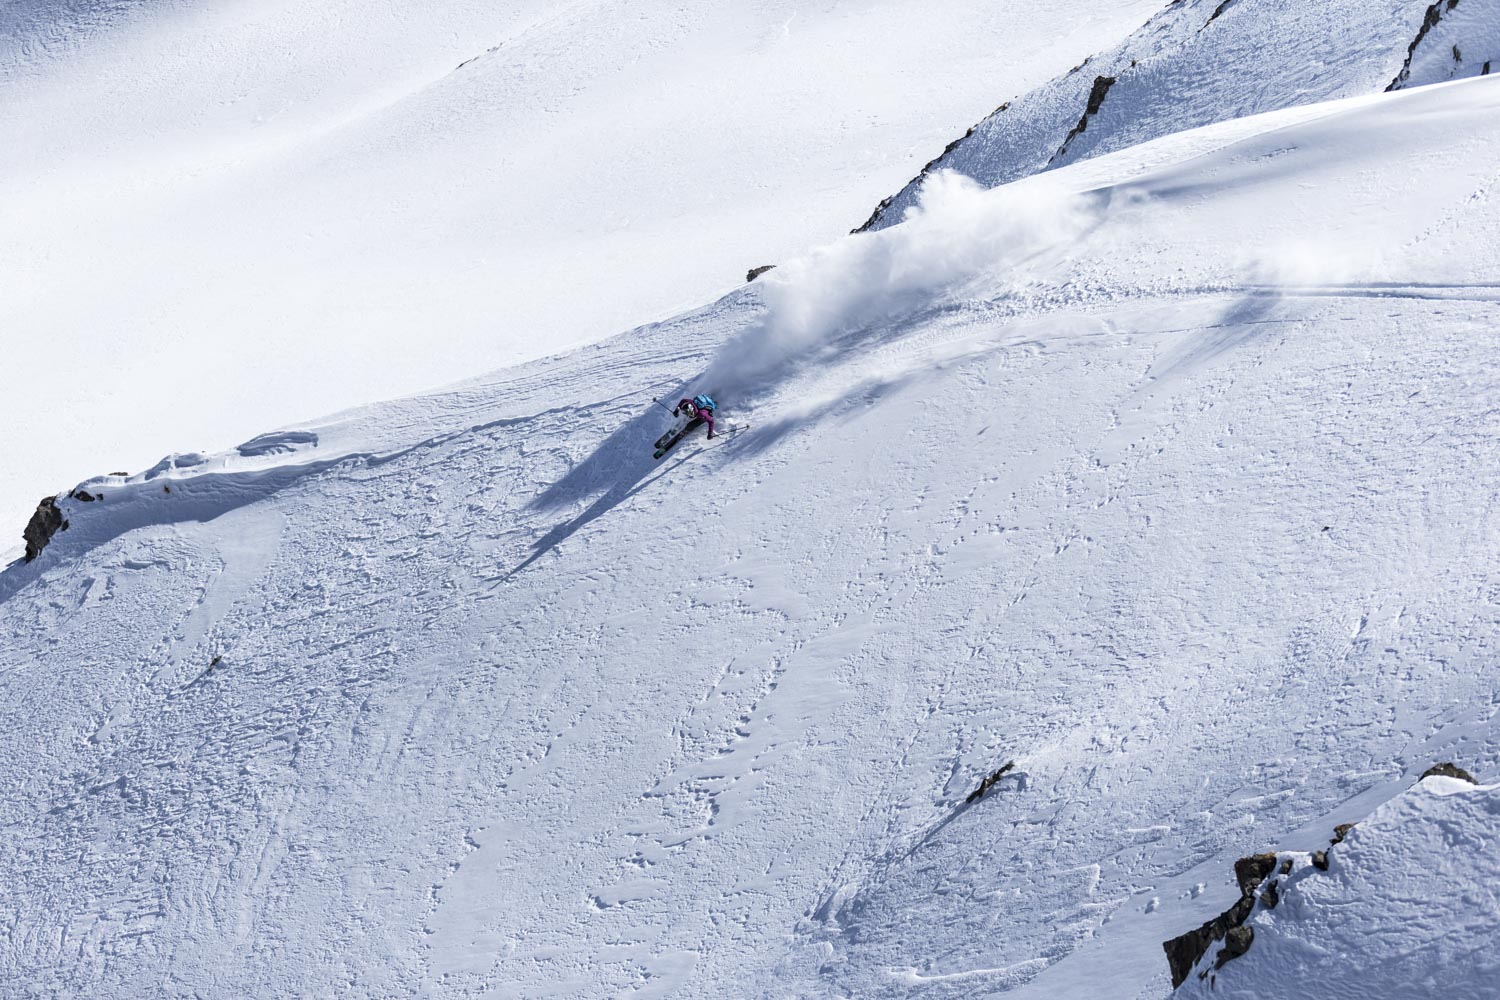 Powder Turn - Ski - Off Piste - Line of Descent - Warren Miller - K2 - Lexi Dupont - Heliskiing - Sestriere - PureSkiCompany